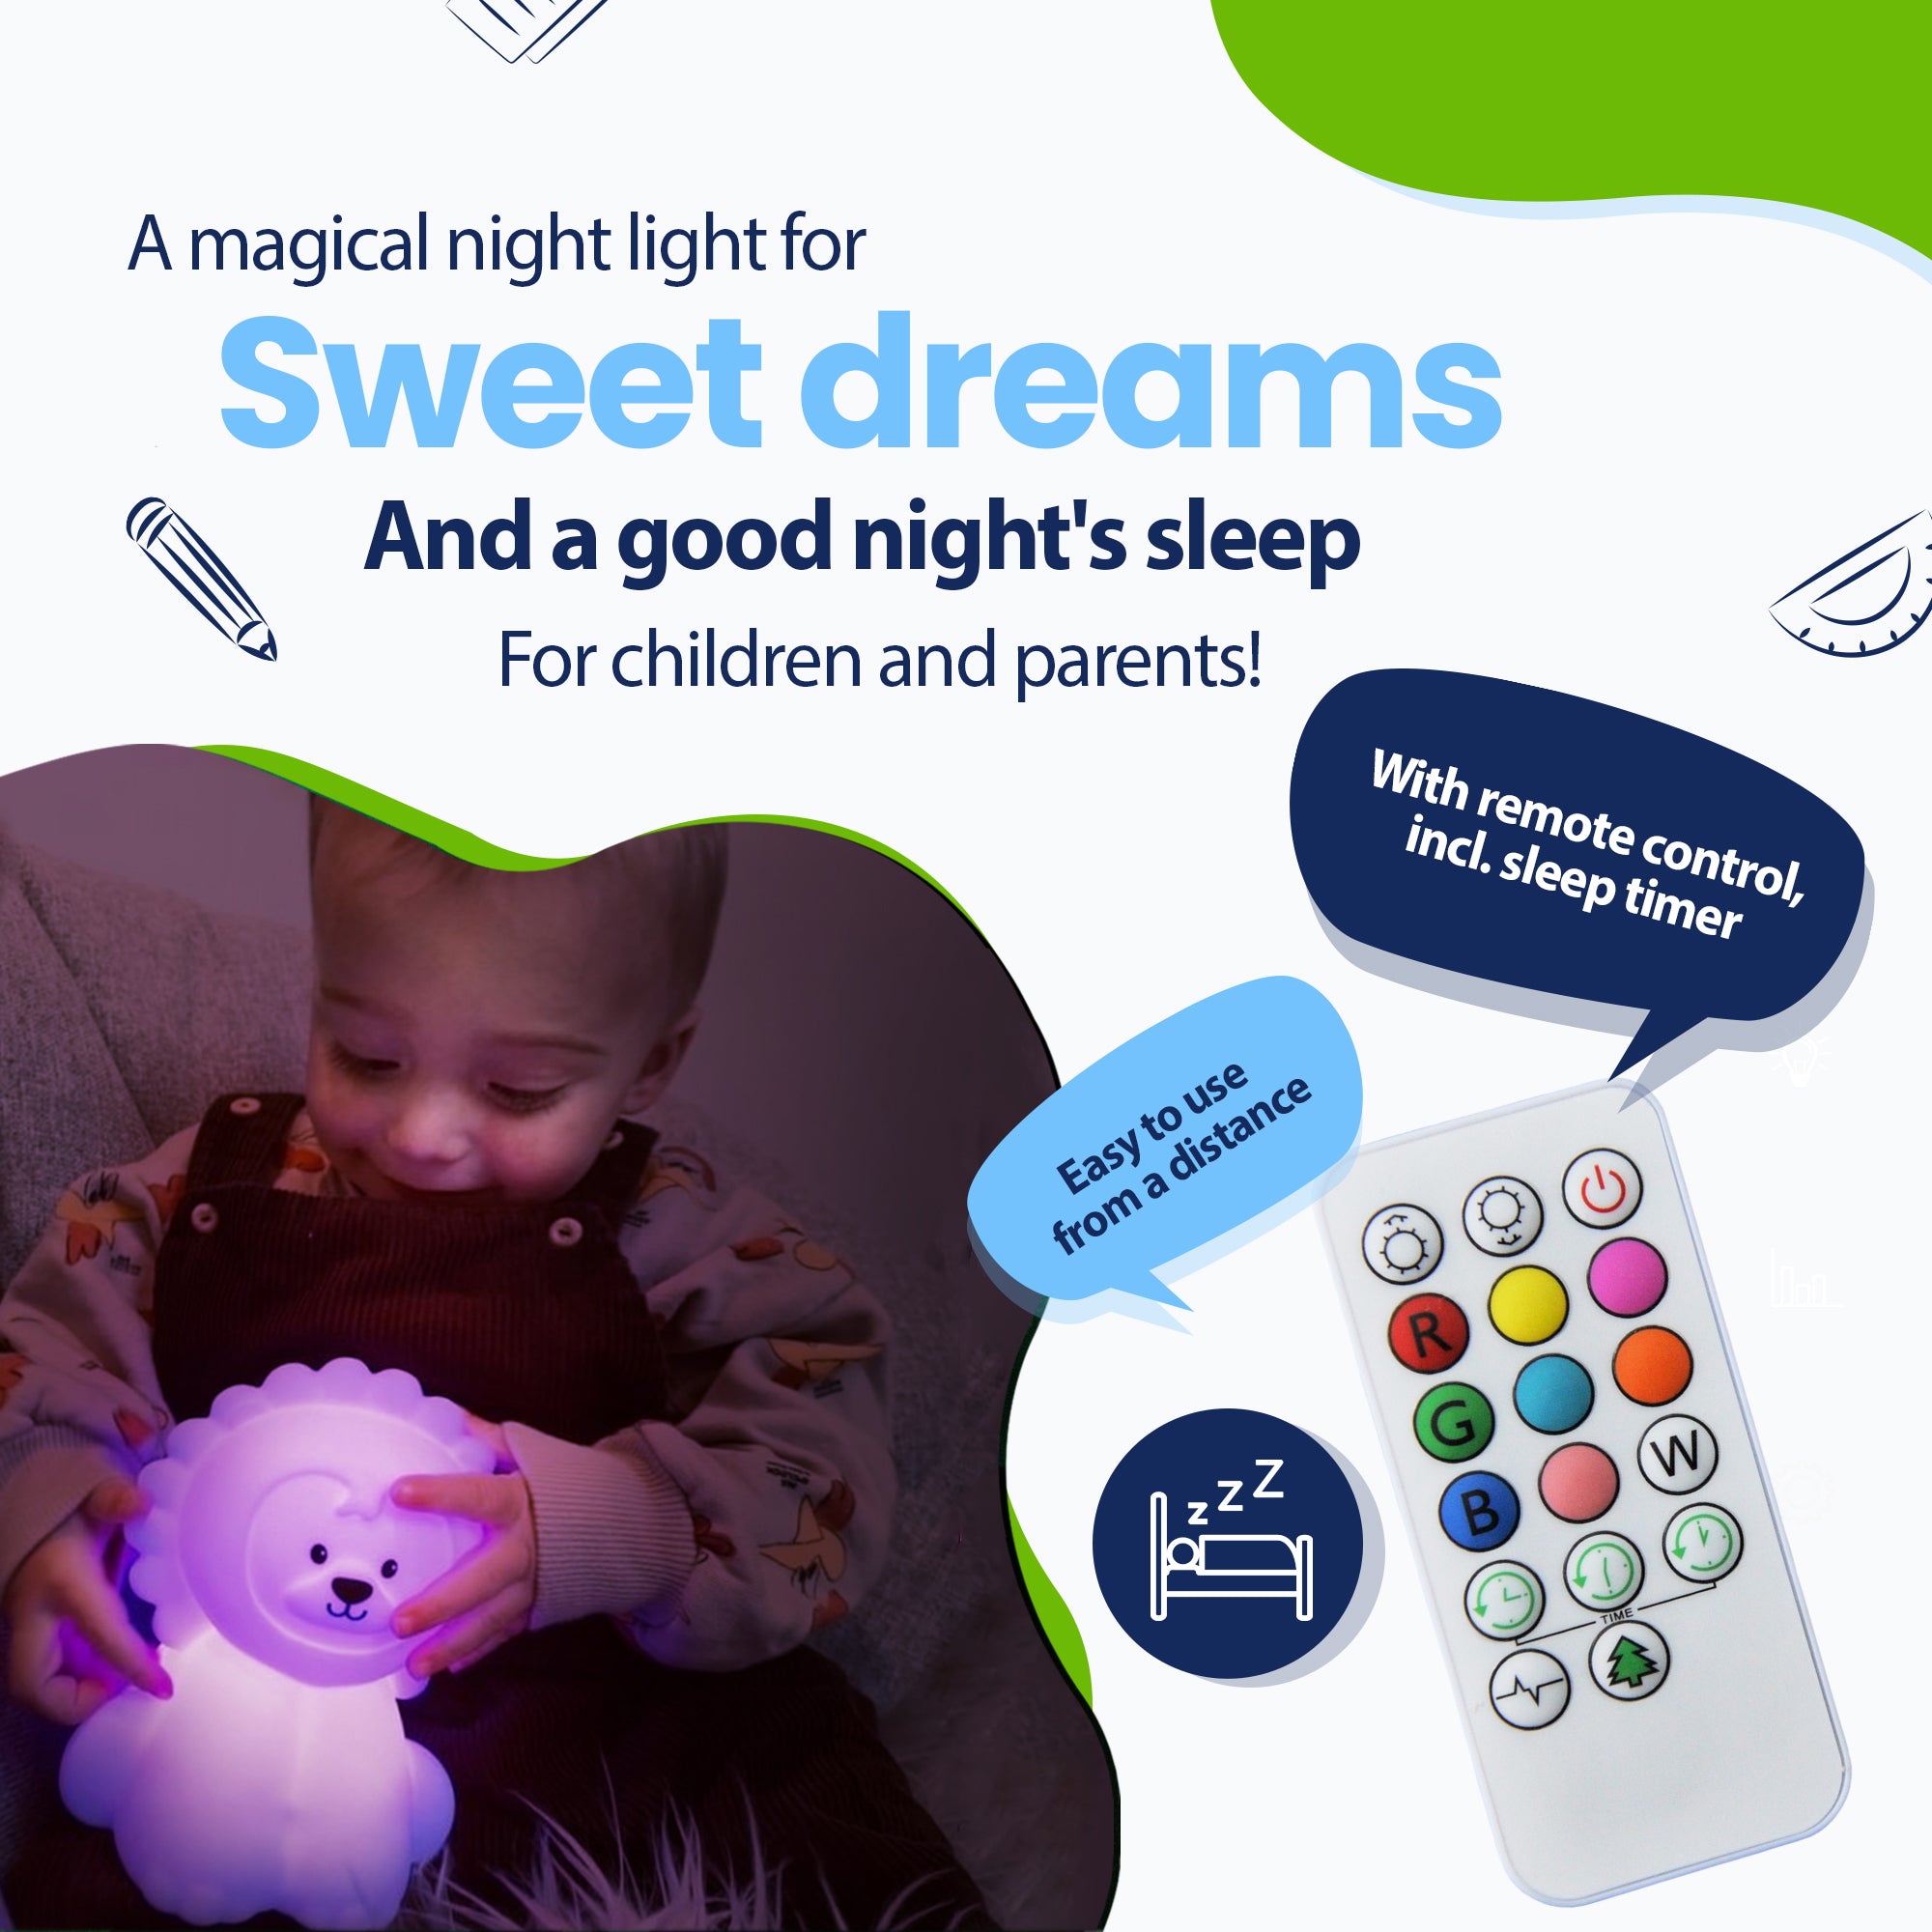 Una luz nocturna mágica para dulces sueños y un sueño reparador para niños y padres, con control remoto que incluye temporizador para dormir, fácilmente a distancia